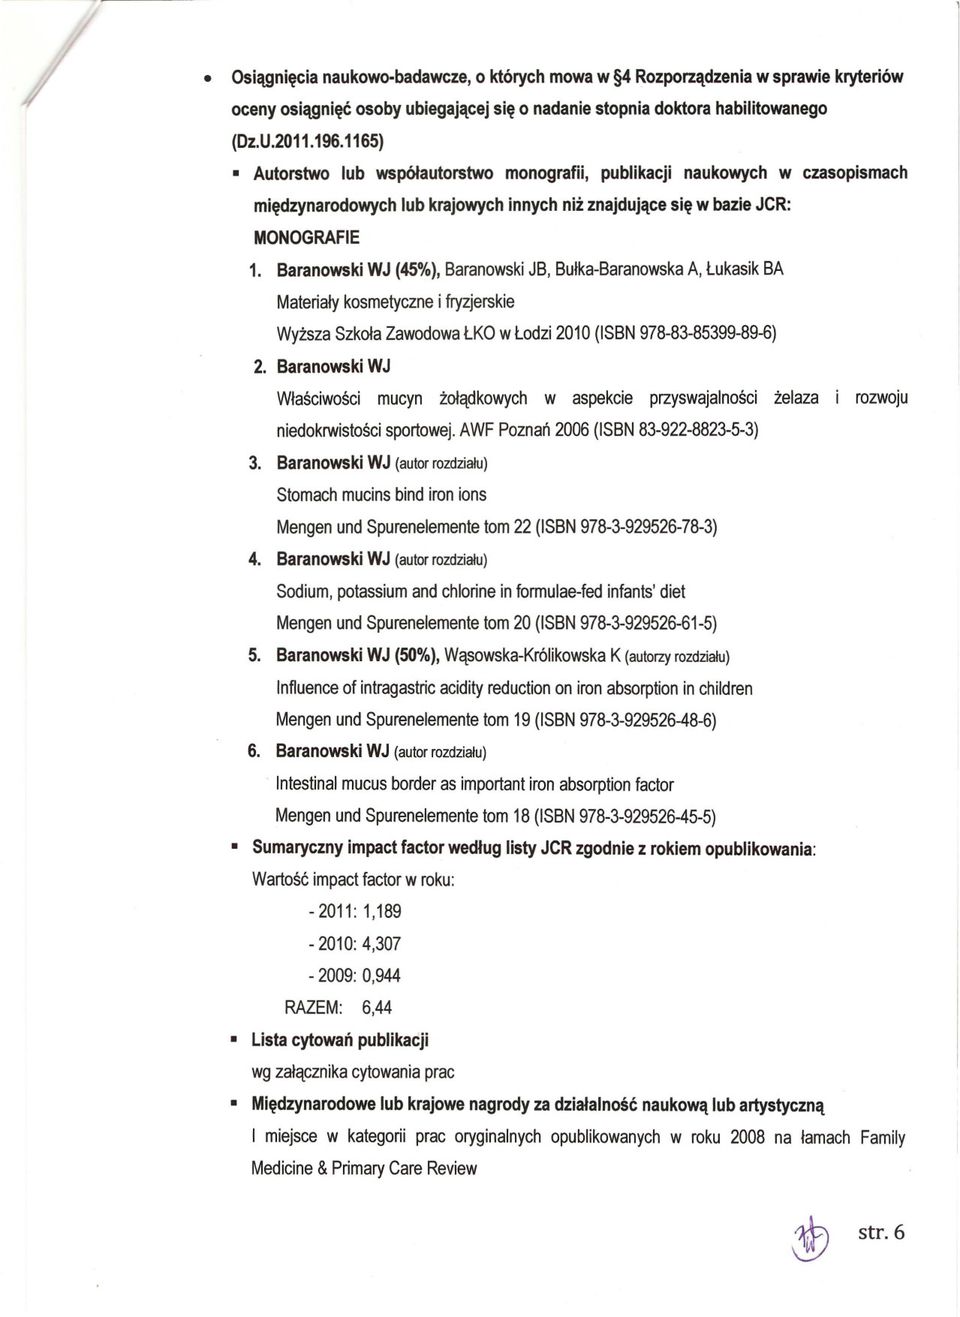 Baranowski WJ (45%), Baranowski JB, Bulka-Baranowska A, Lukasik BA Materialy kosmetyczne i fryzjerskie Wyzsza Szkola Zawodowa LKO w Lodzi 2010 (ISBN 978-83-85399-89-6) 2.